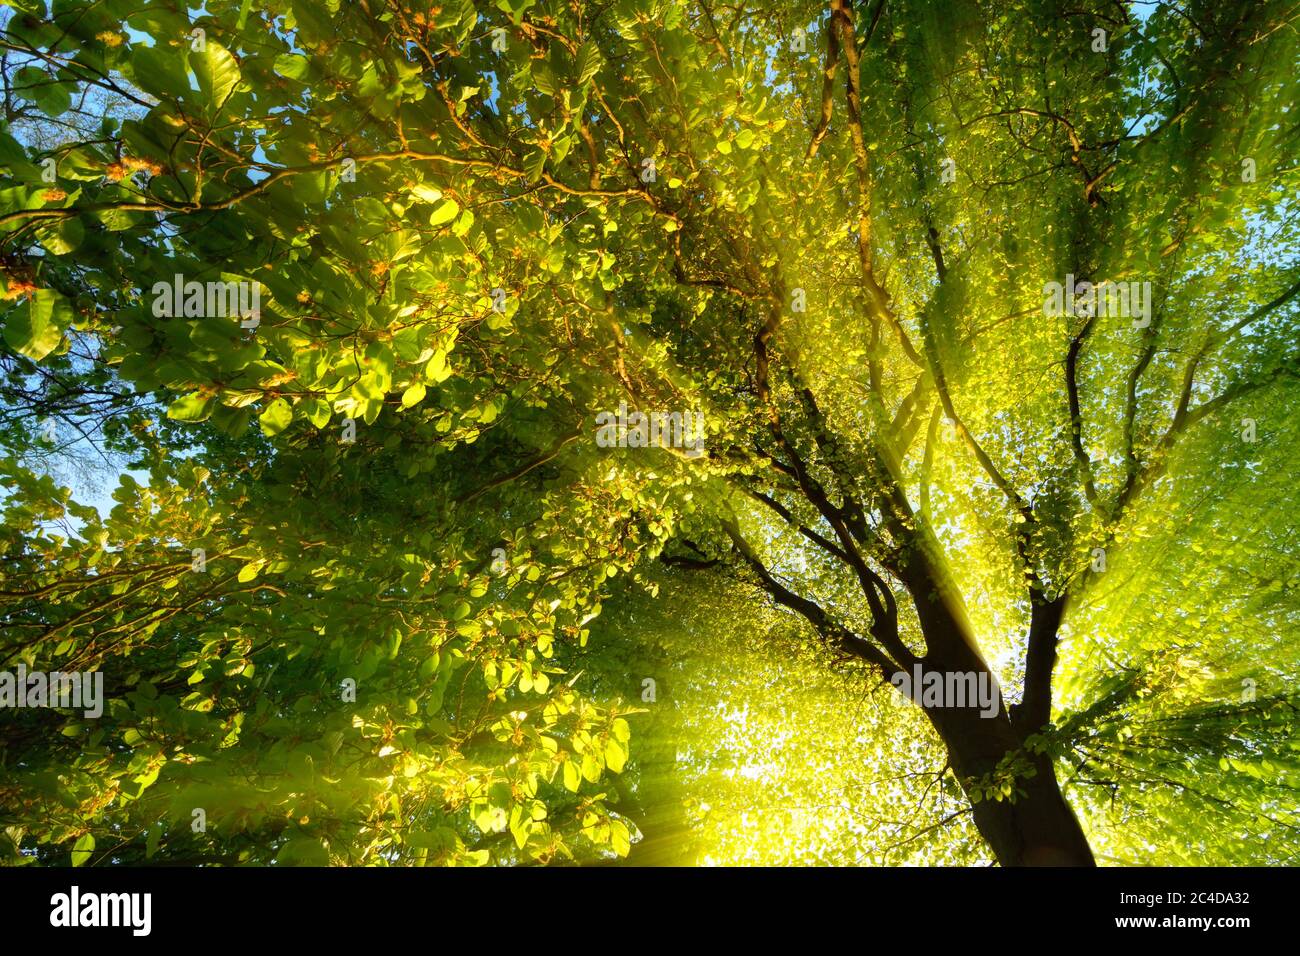 Des rayons de lumière majestueux éclairent de façon spectaculaire les branches et le feuillage d'un arbre, le soleil derrière la silhouette du tronc Banque D'Images